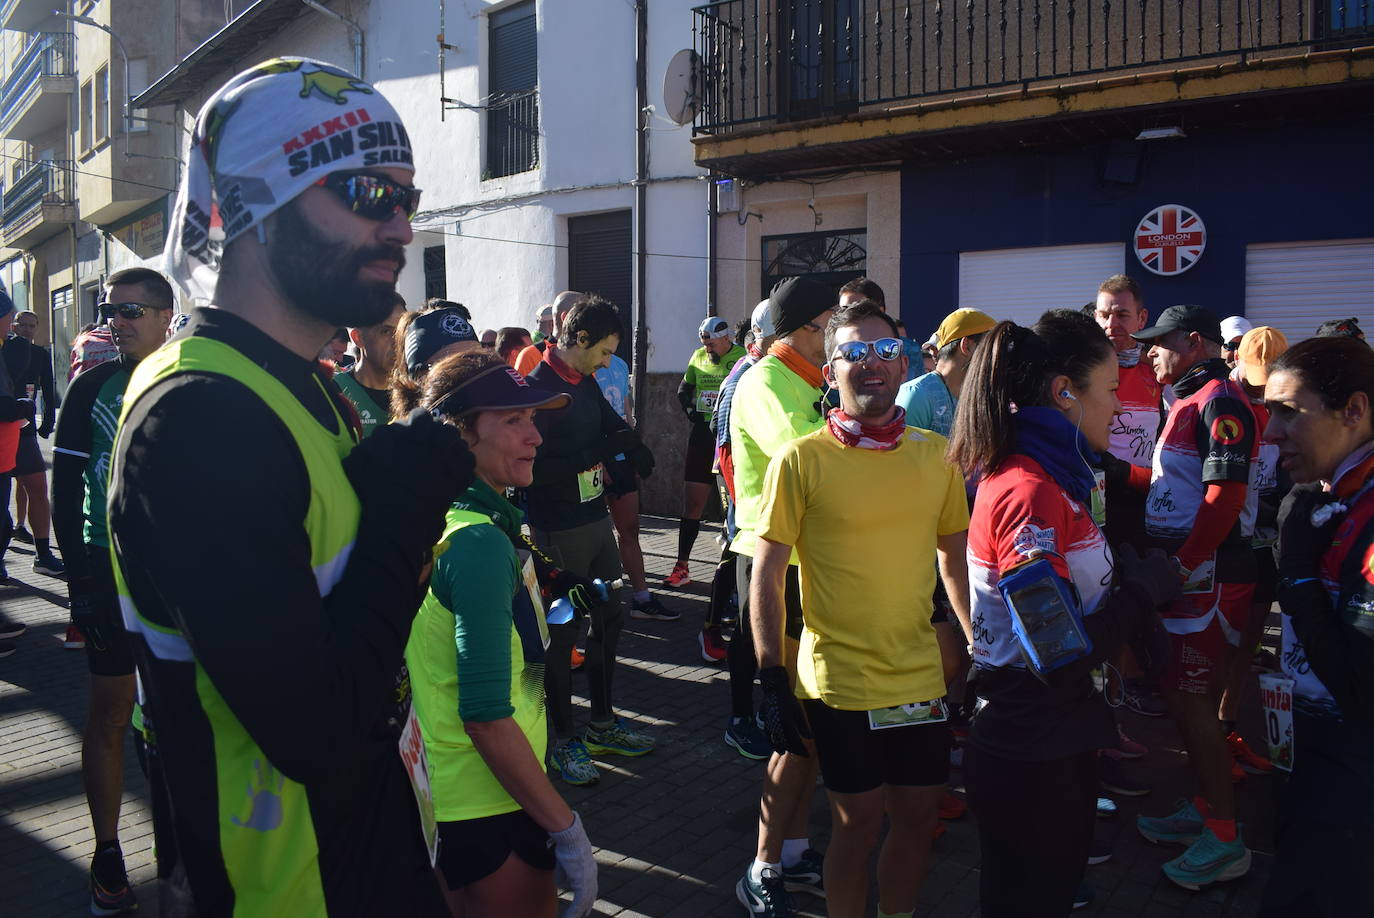 Fotos: Javier Alves y Gema Martín ganan la Media Maratón de Guijuelo